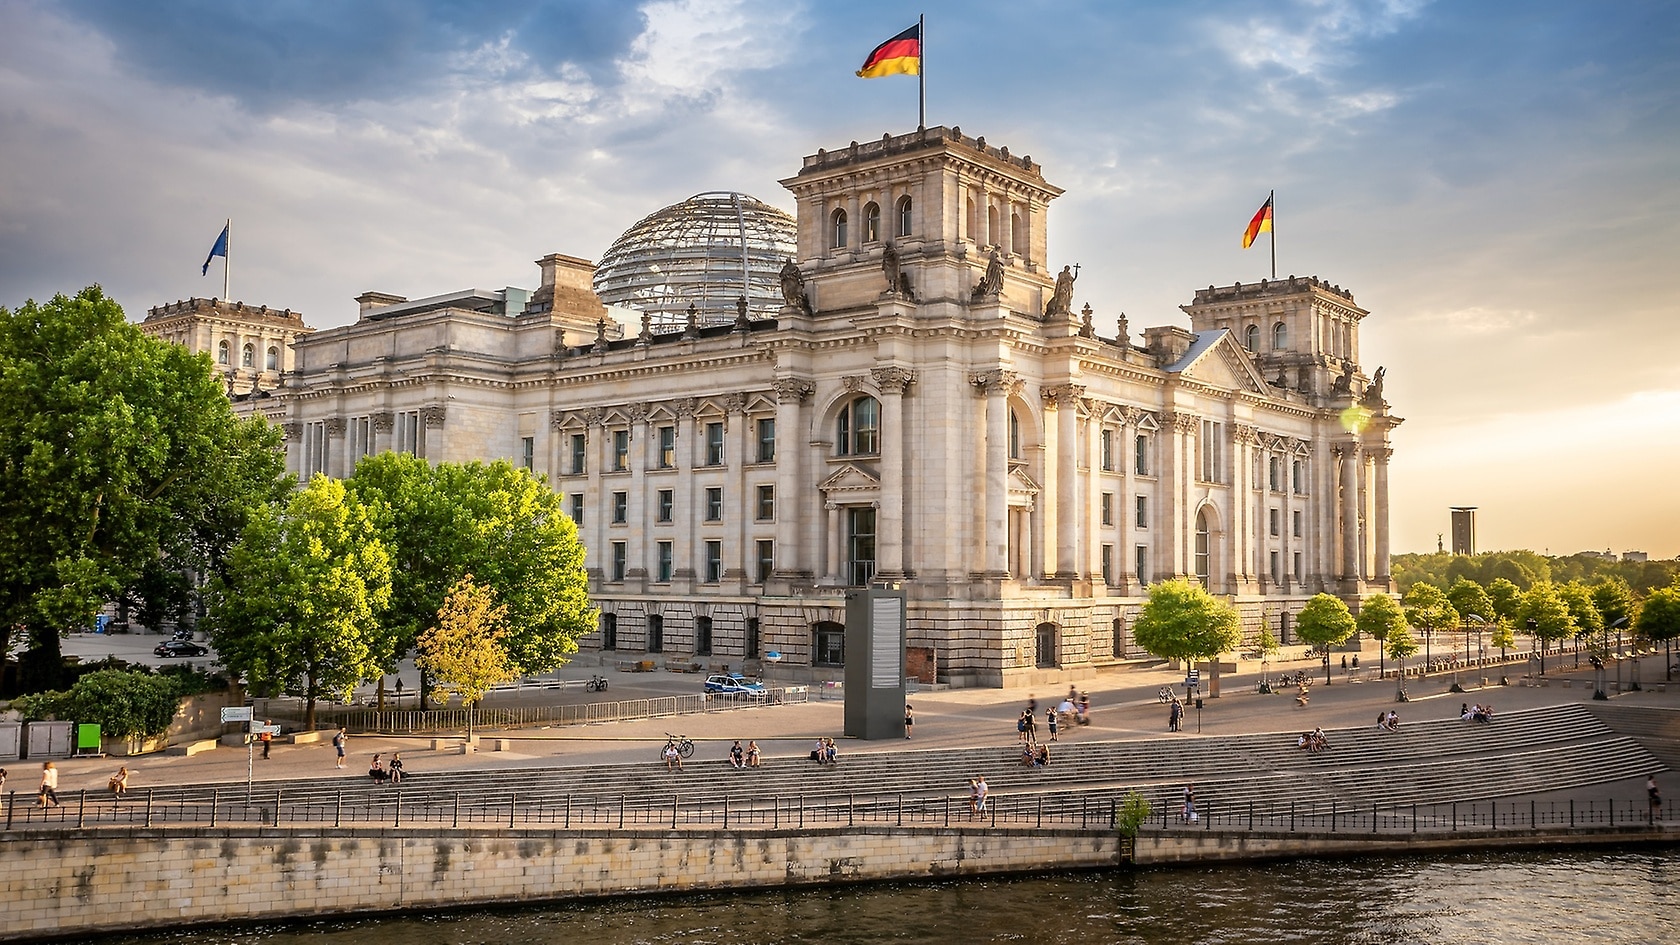 The German Bundestag.